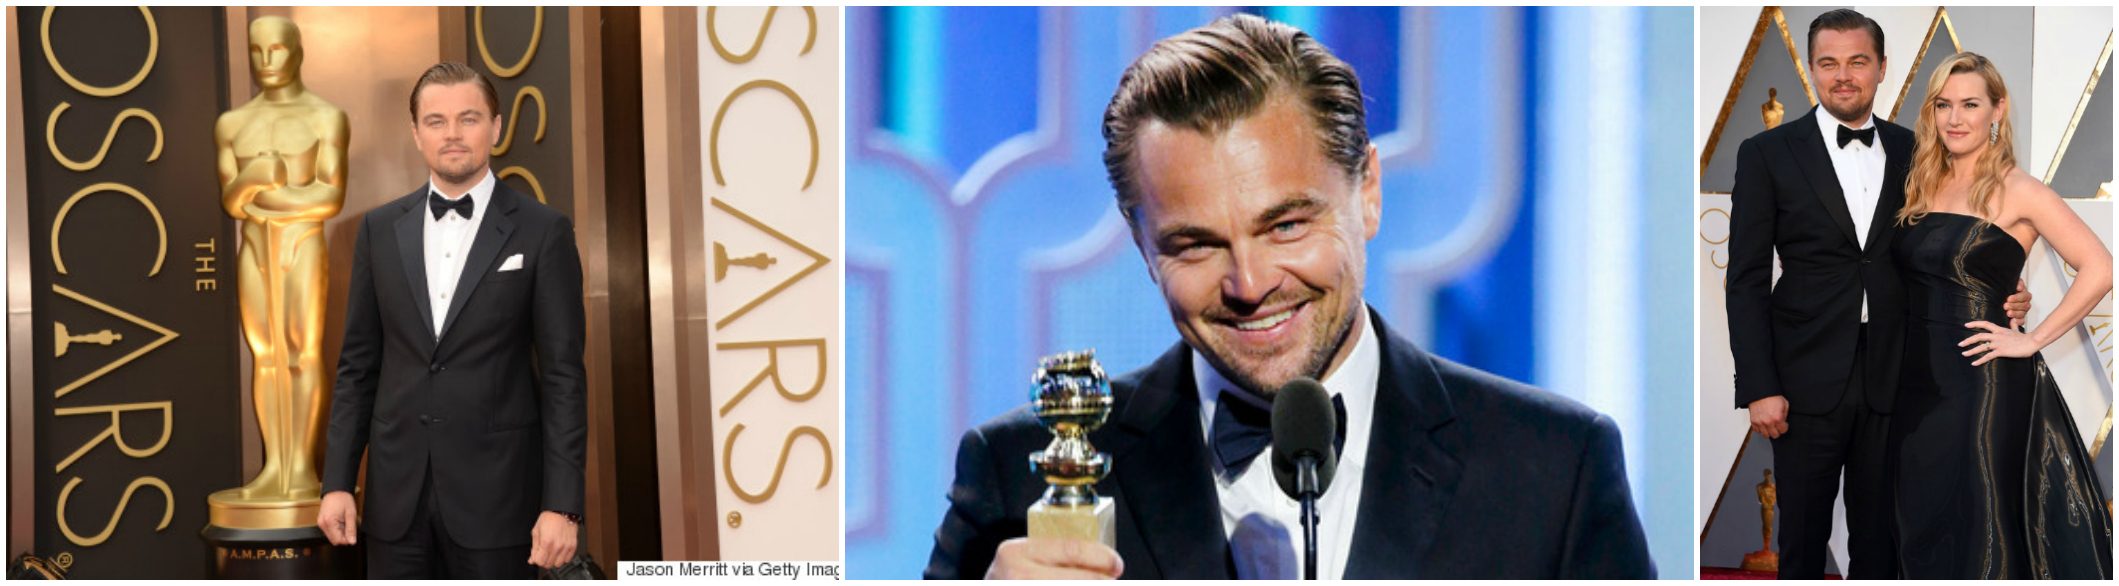 Leonardo DiCaprio Oscar Best Actor The Revenant 2016